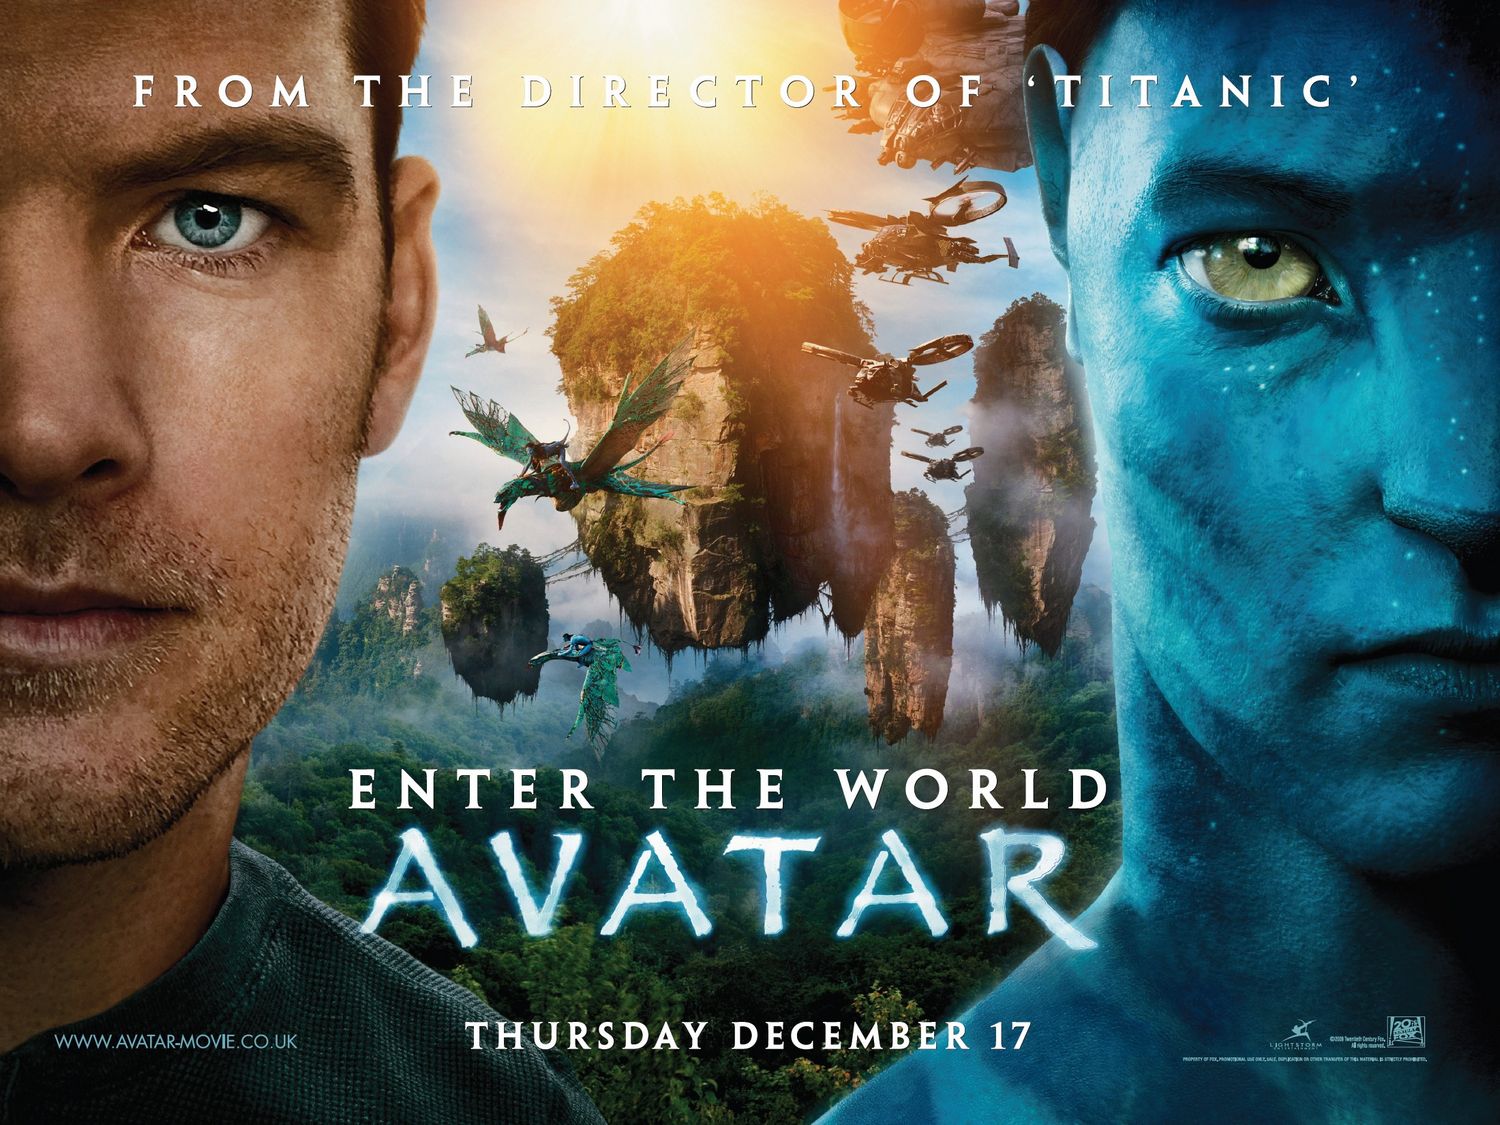 Avatar phần tiếp dưới nước: Với Avatar 2: The Way of Water, đạo diễn James Cameron tái hiện thế giới dưới nước của Pandora – nơi tuyệt đẹp và đầy bí ẩn. Bạn sẽ được bơi lội giữa những rặng san hô rực rỡ, khám phá những sinh vật lạ lùng và tham gia những cuộc chiến đầy kịch tính dưới đại dương xanh thẳm.